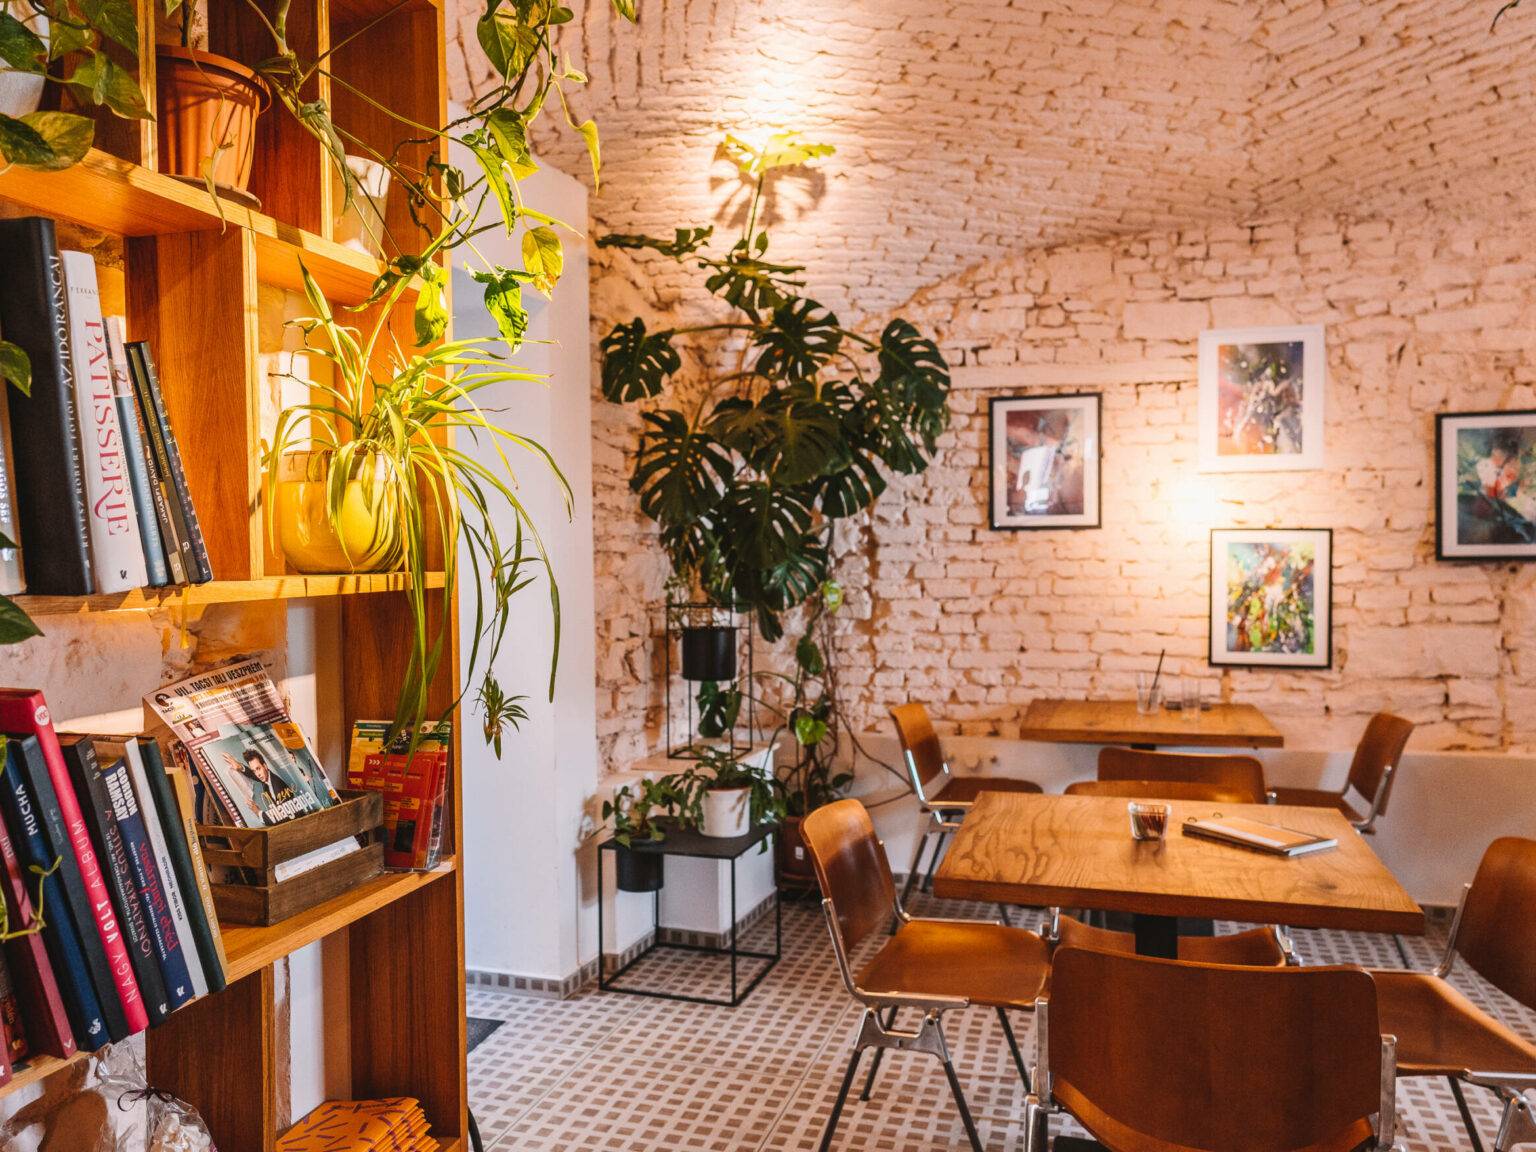 Das hippe Café Füge in Ungarns Stadt Veszprém bietet neben Kaffee und Kuchen auch Lesemöglichkeiten.